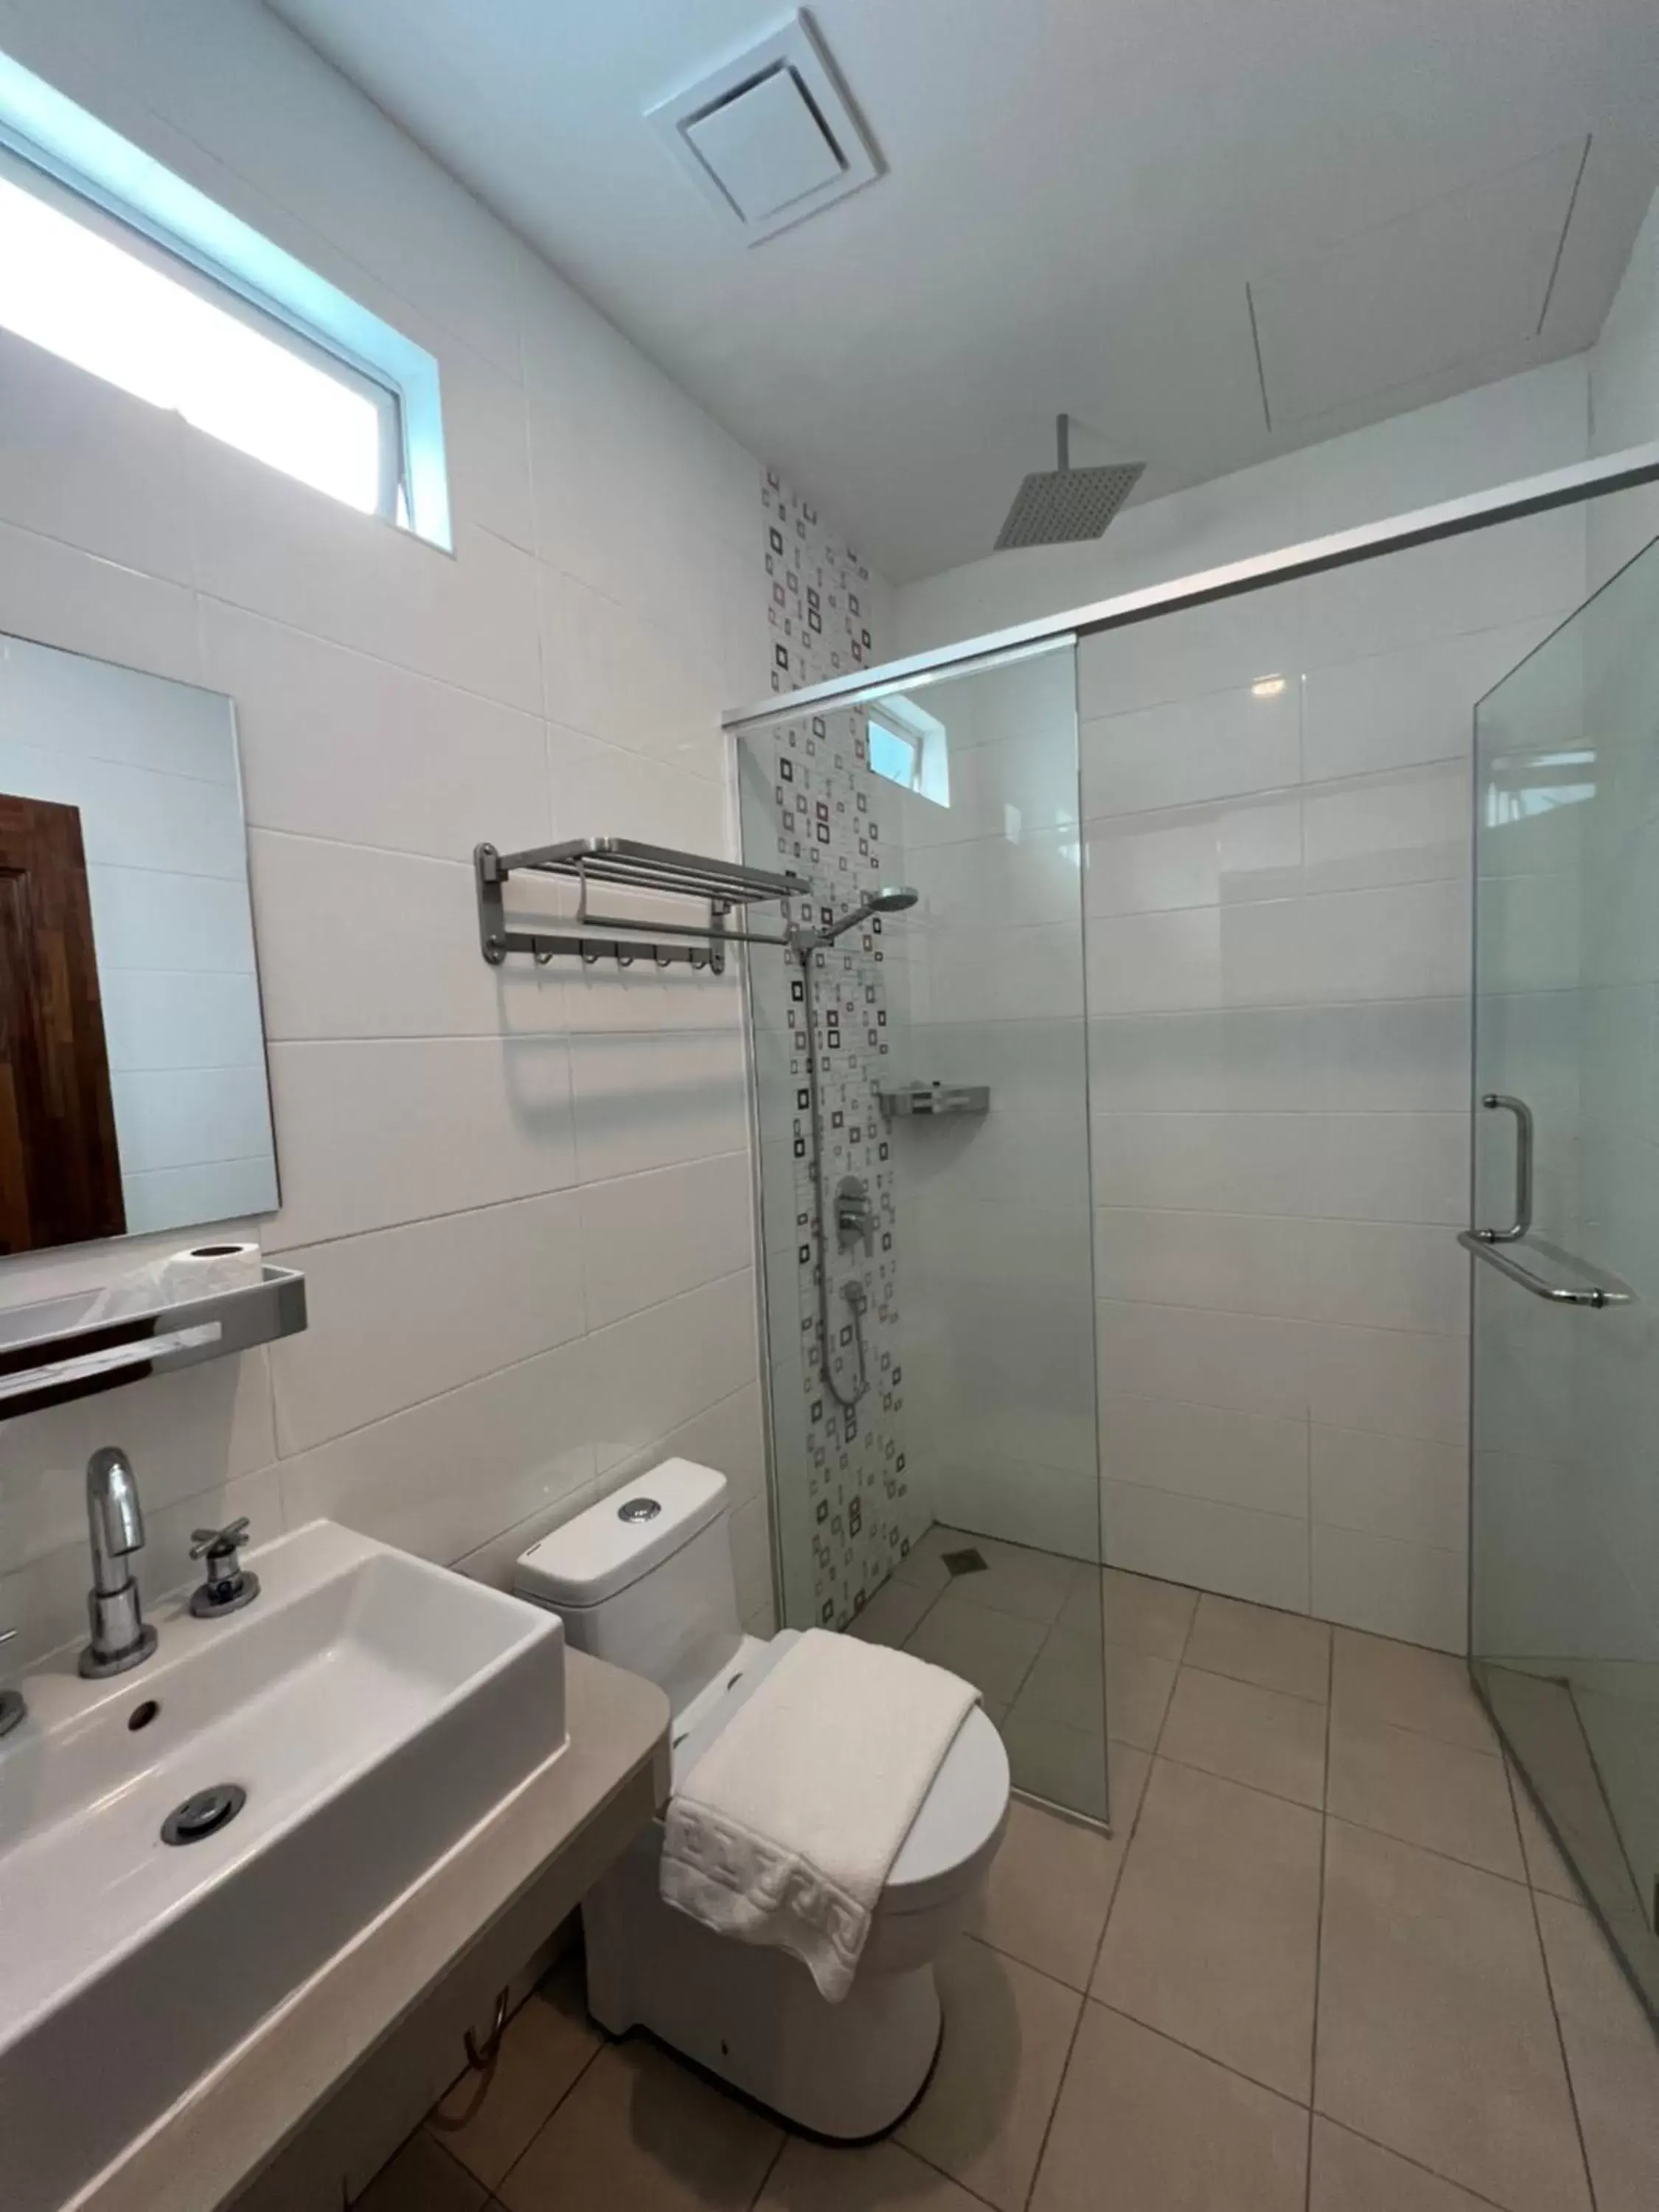 Bathroom in Airis Sanctuary Resort